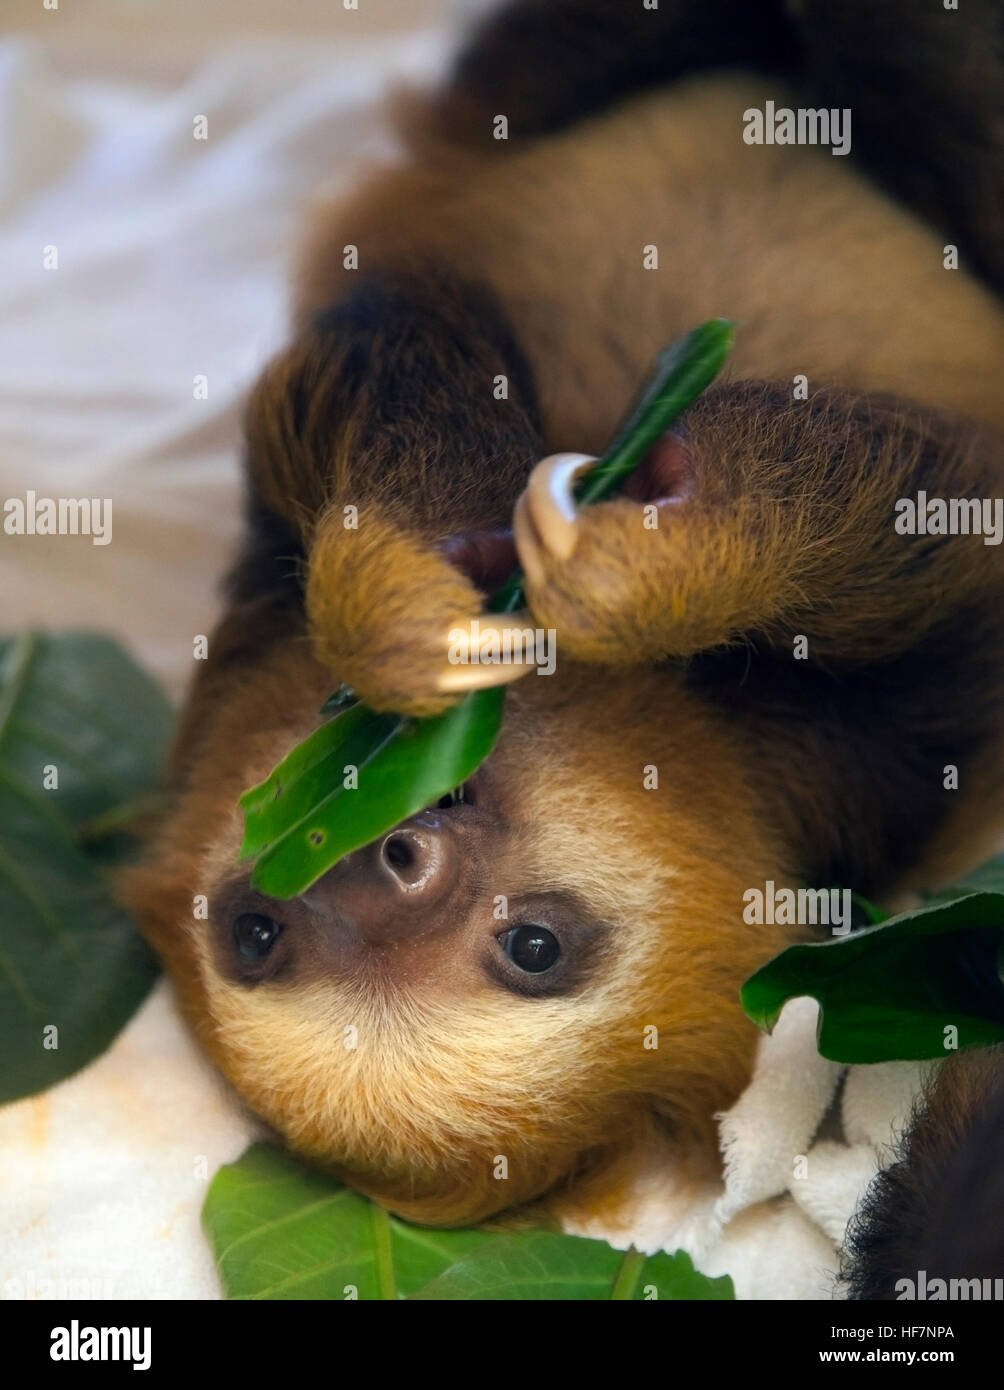 Bébé orphelin Sloth à deux doigts de Hoffmann (Choloepus hoffmanni) se nourrissant de feuilles au sanctuaire Sloth au Costa Rica Banque D'Images